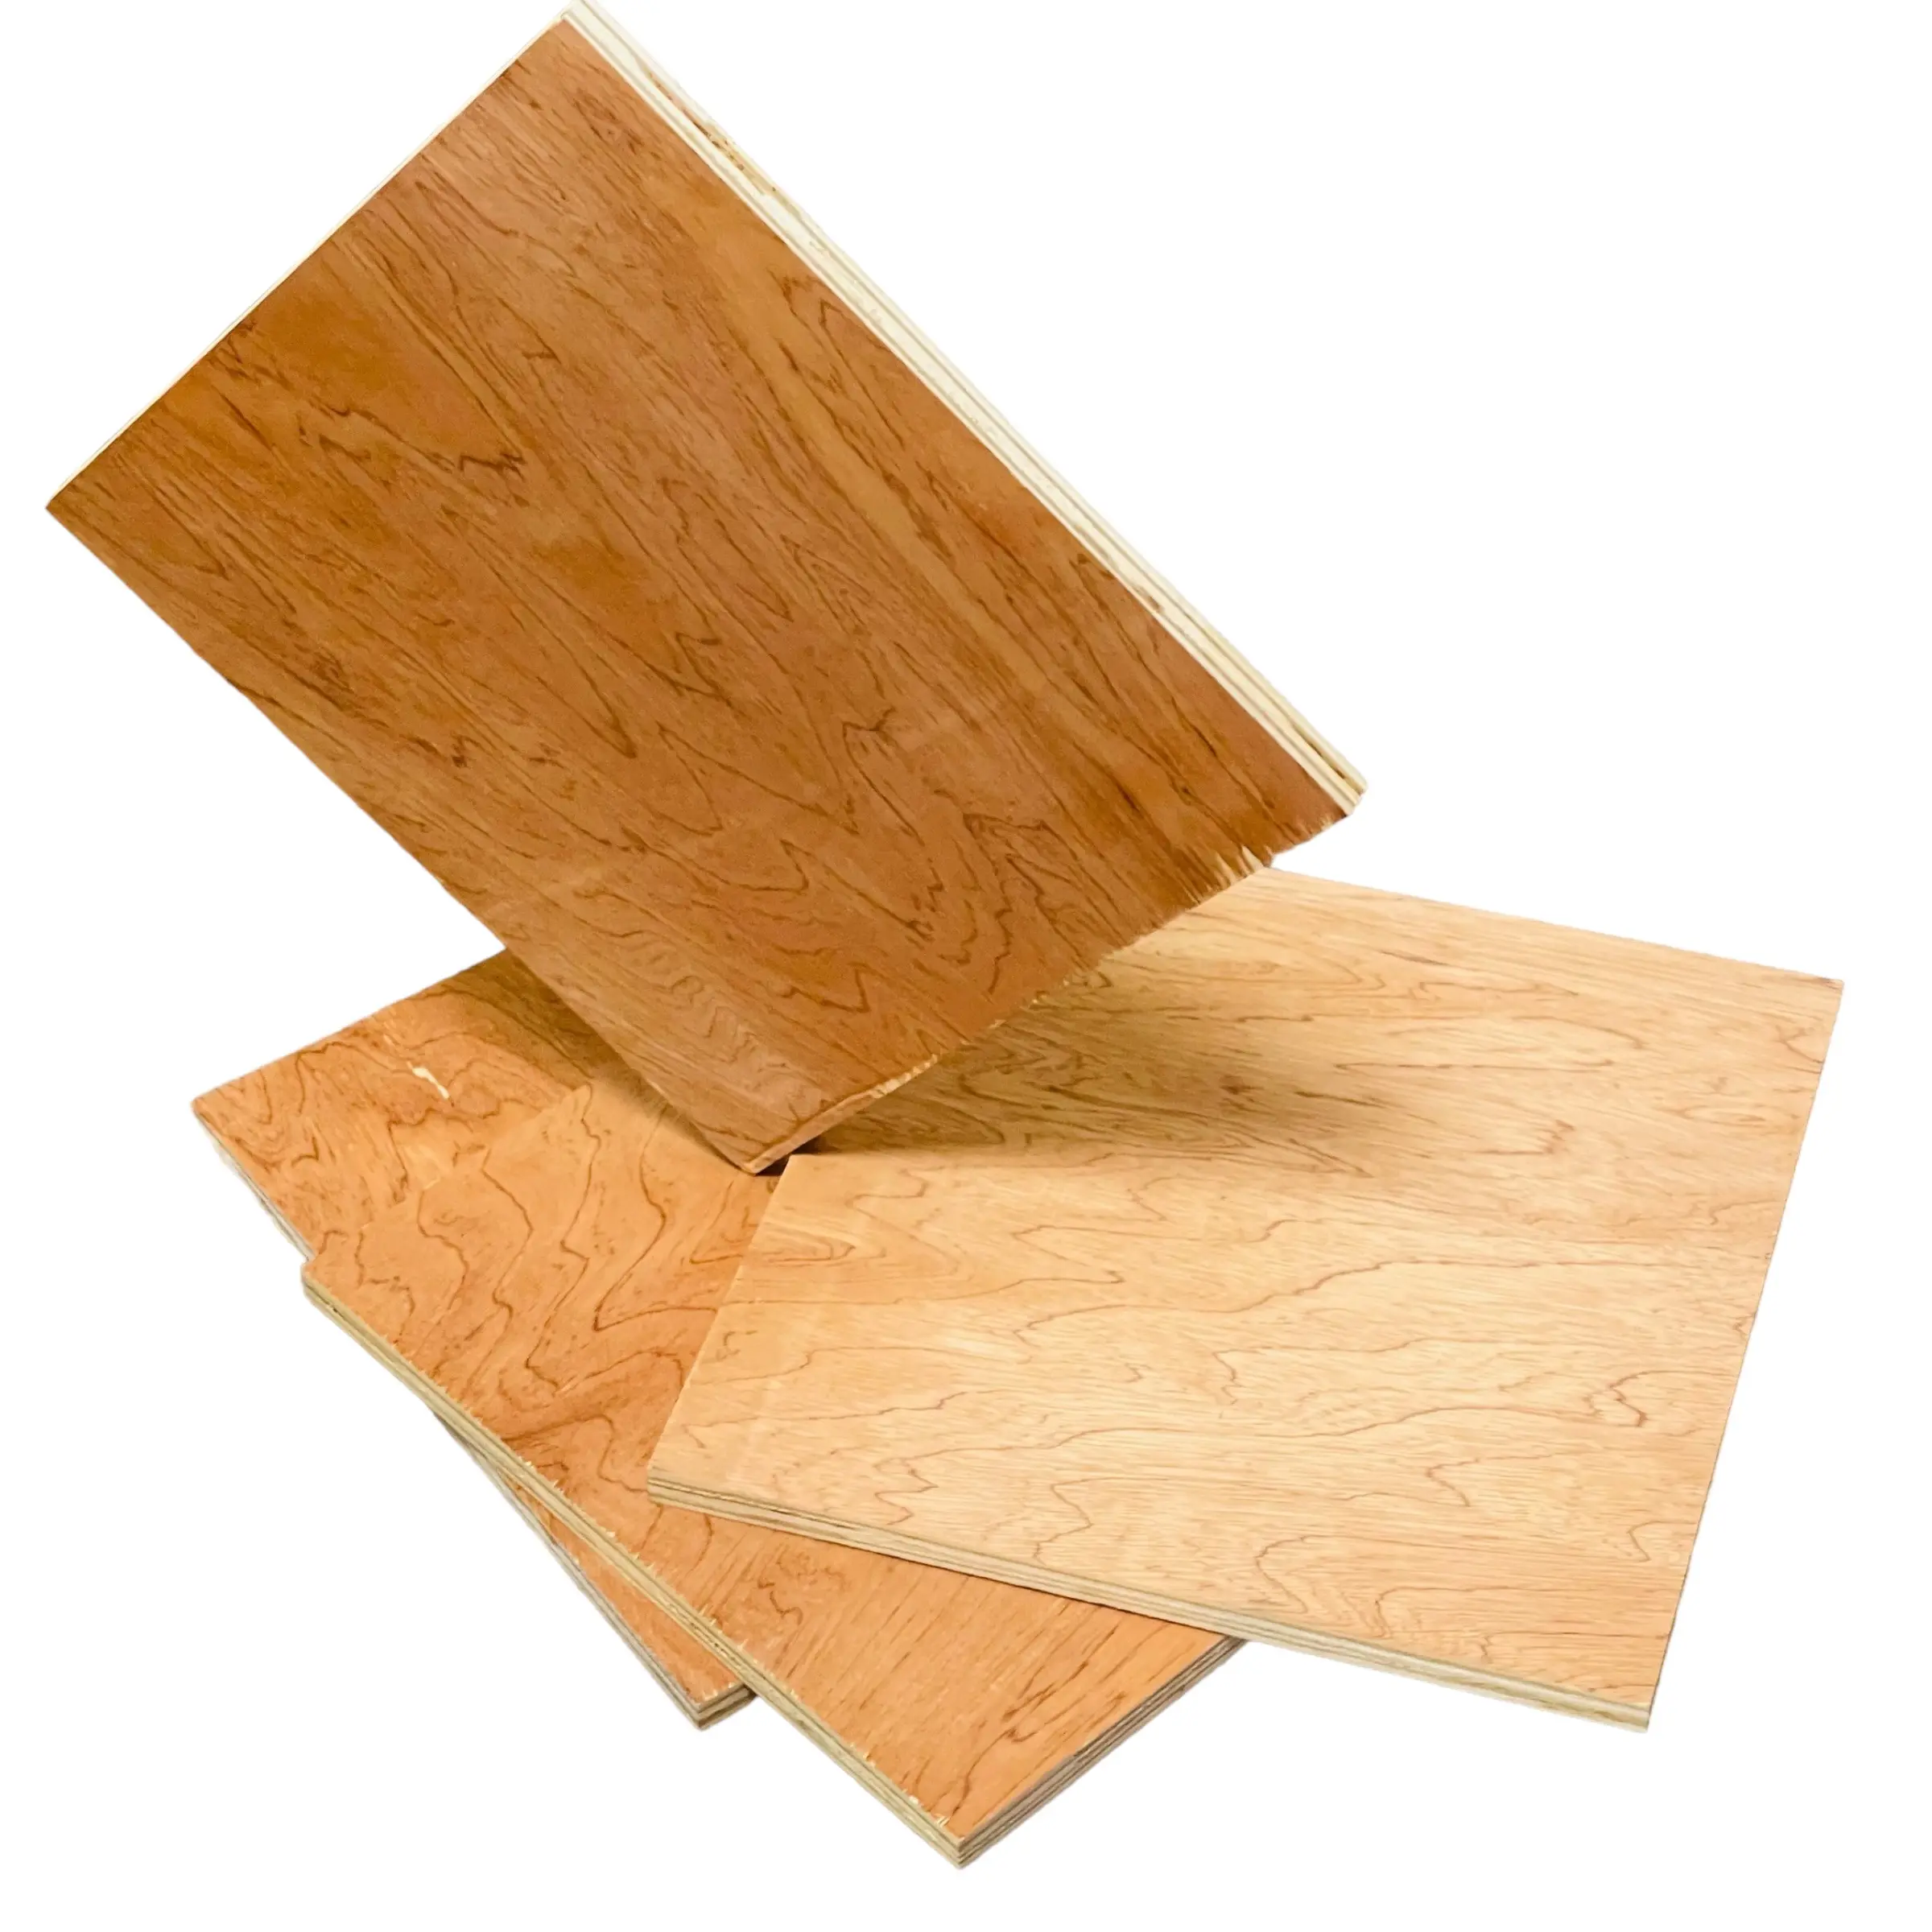 خشب رقائقي 4x8 رخيص السعر تنافسي العديد من التطبيقات خشب الساج والخشب الرقائقي الخيزران صنع في فيتنام